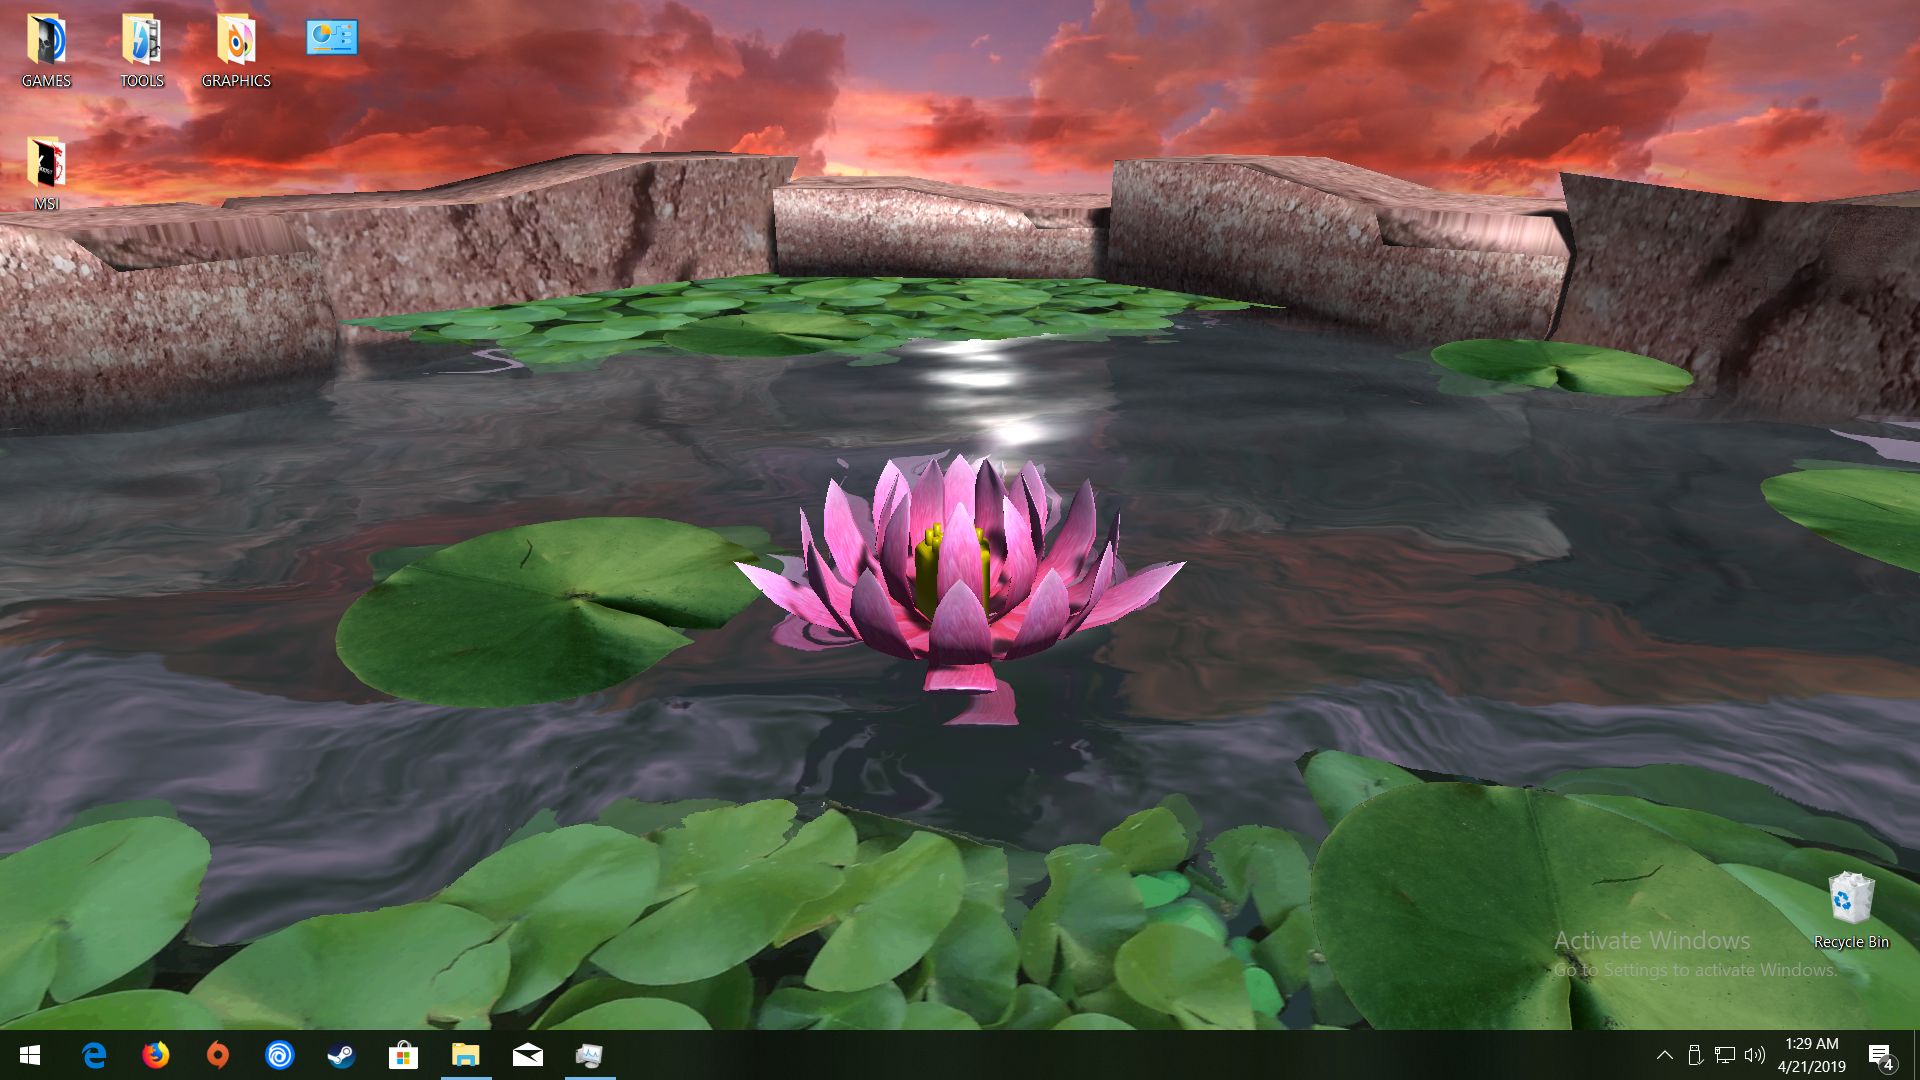 Lotus download windows 10